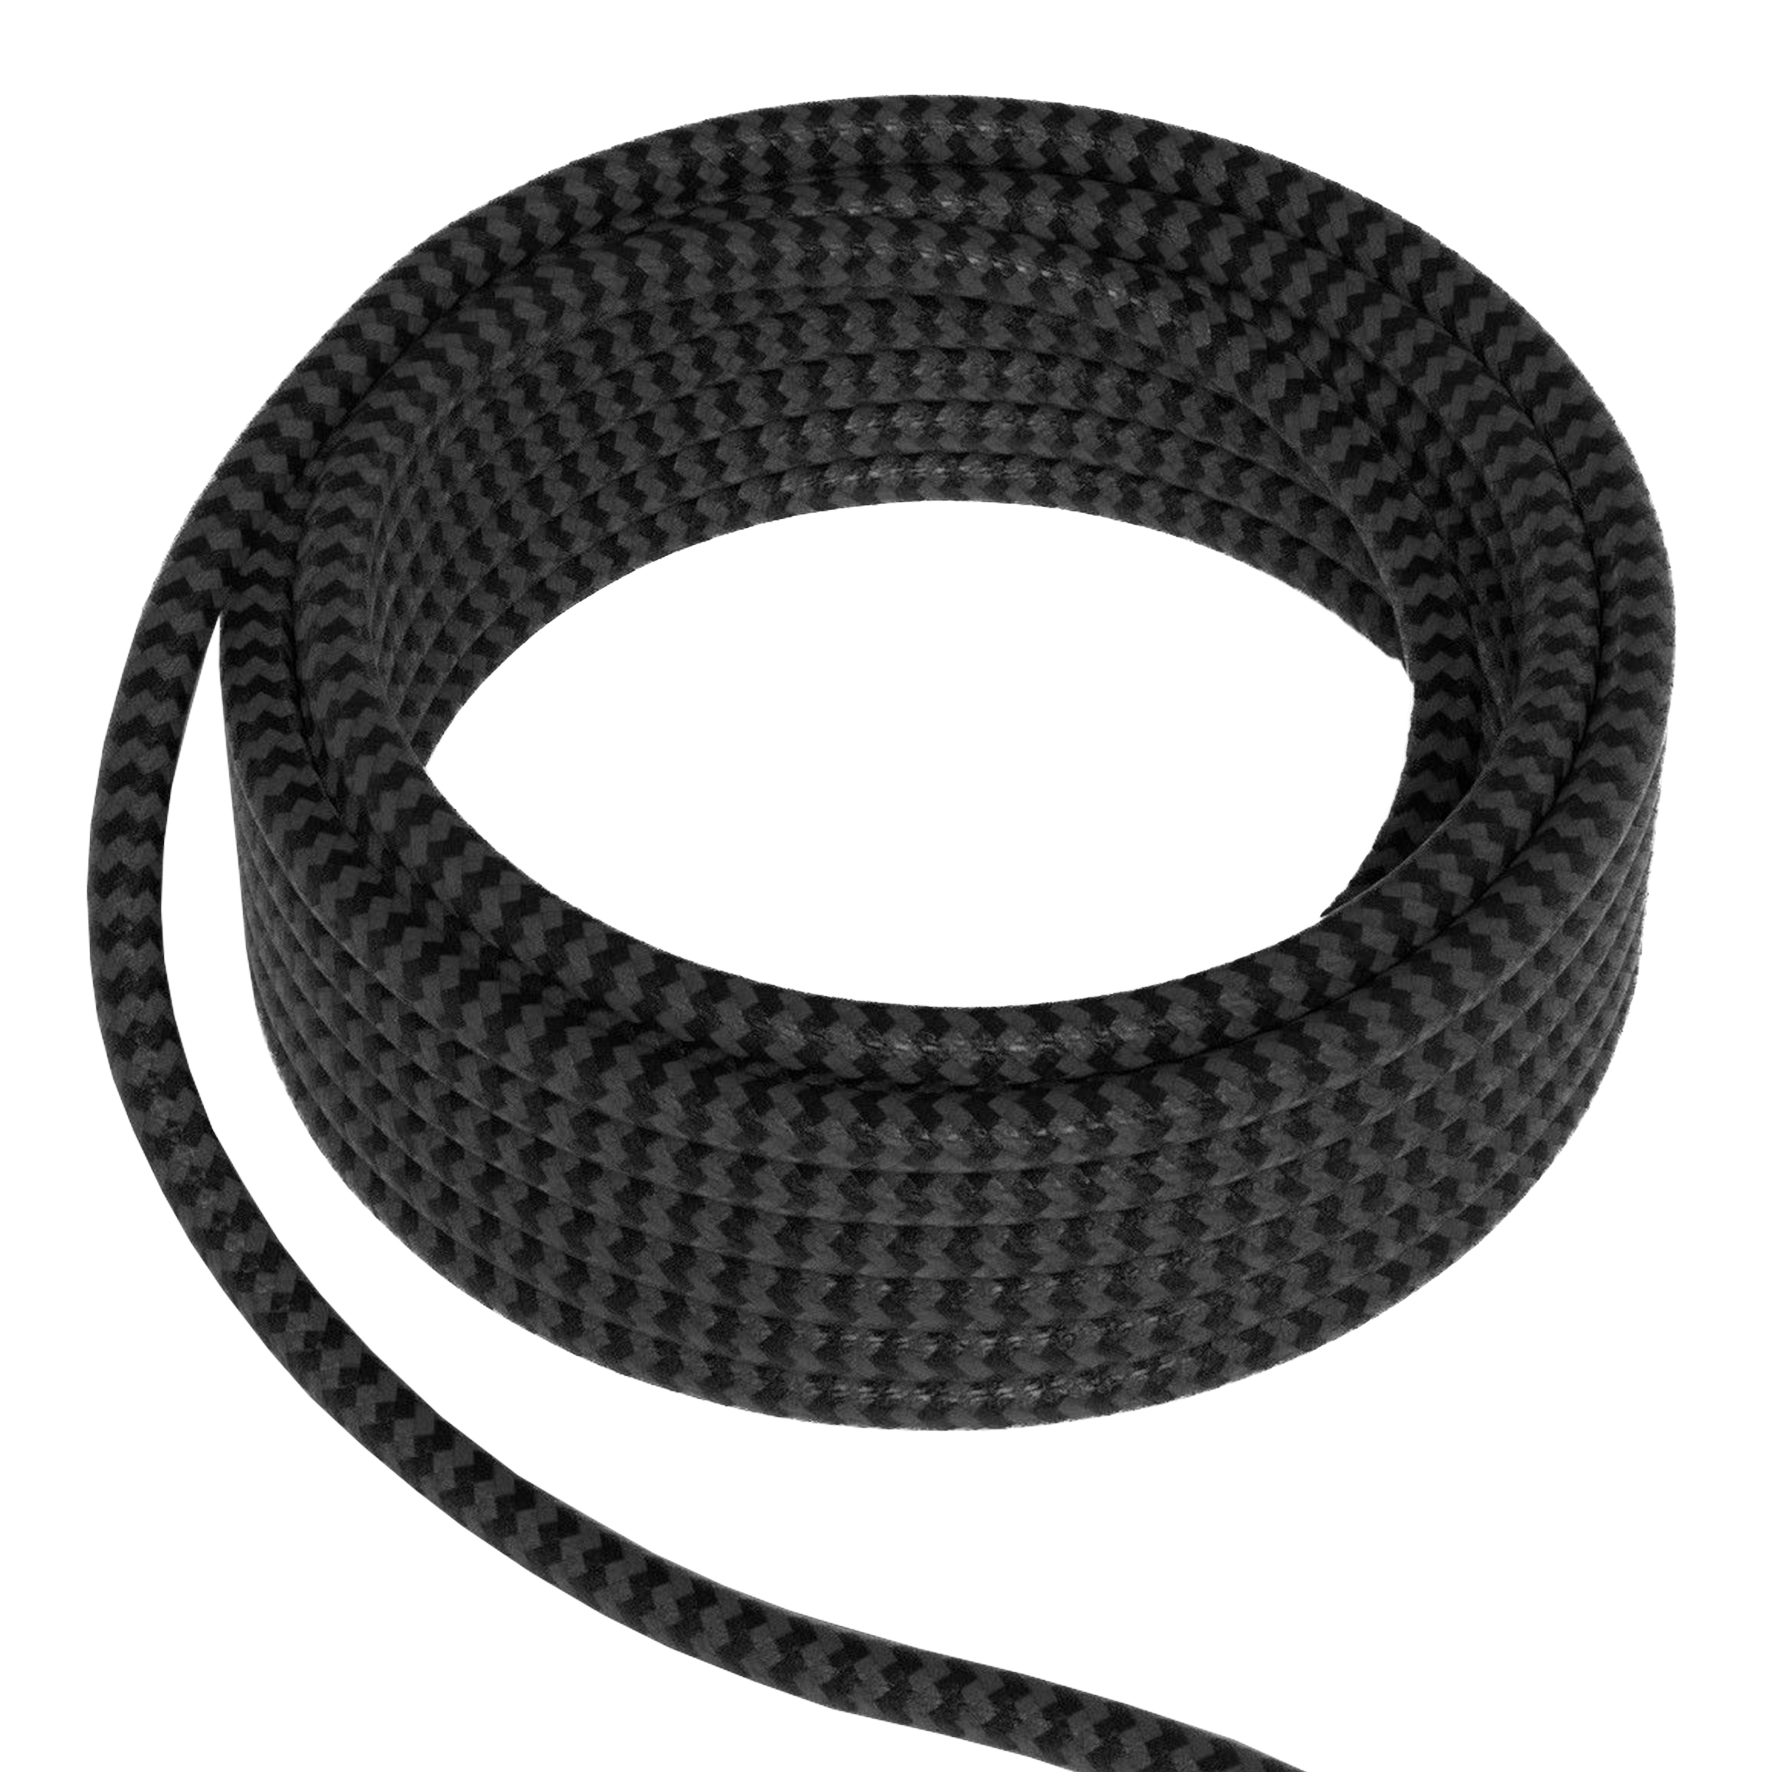 Textile Cable 2C Black/Grey 1.5M